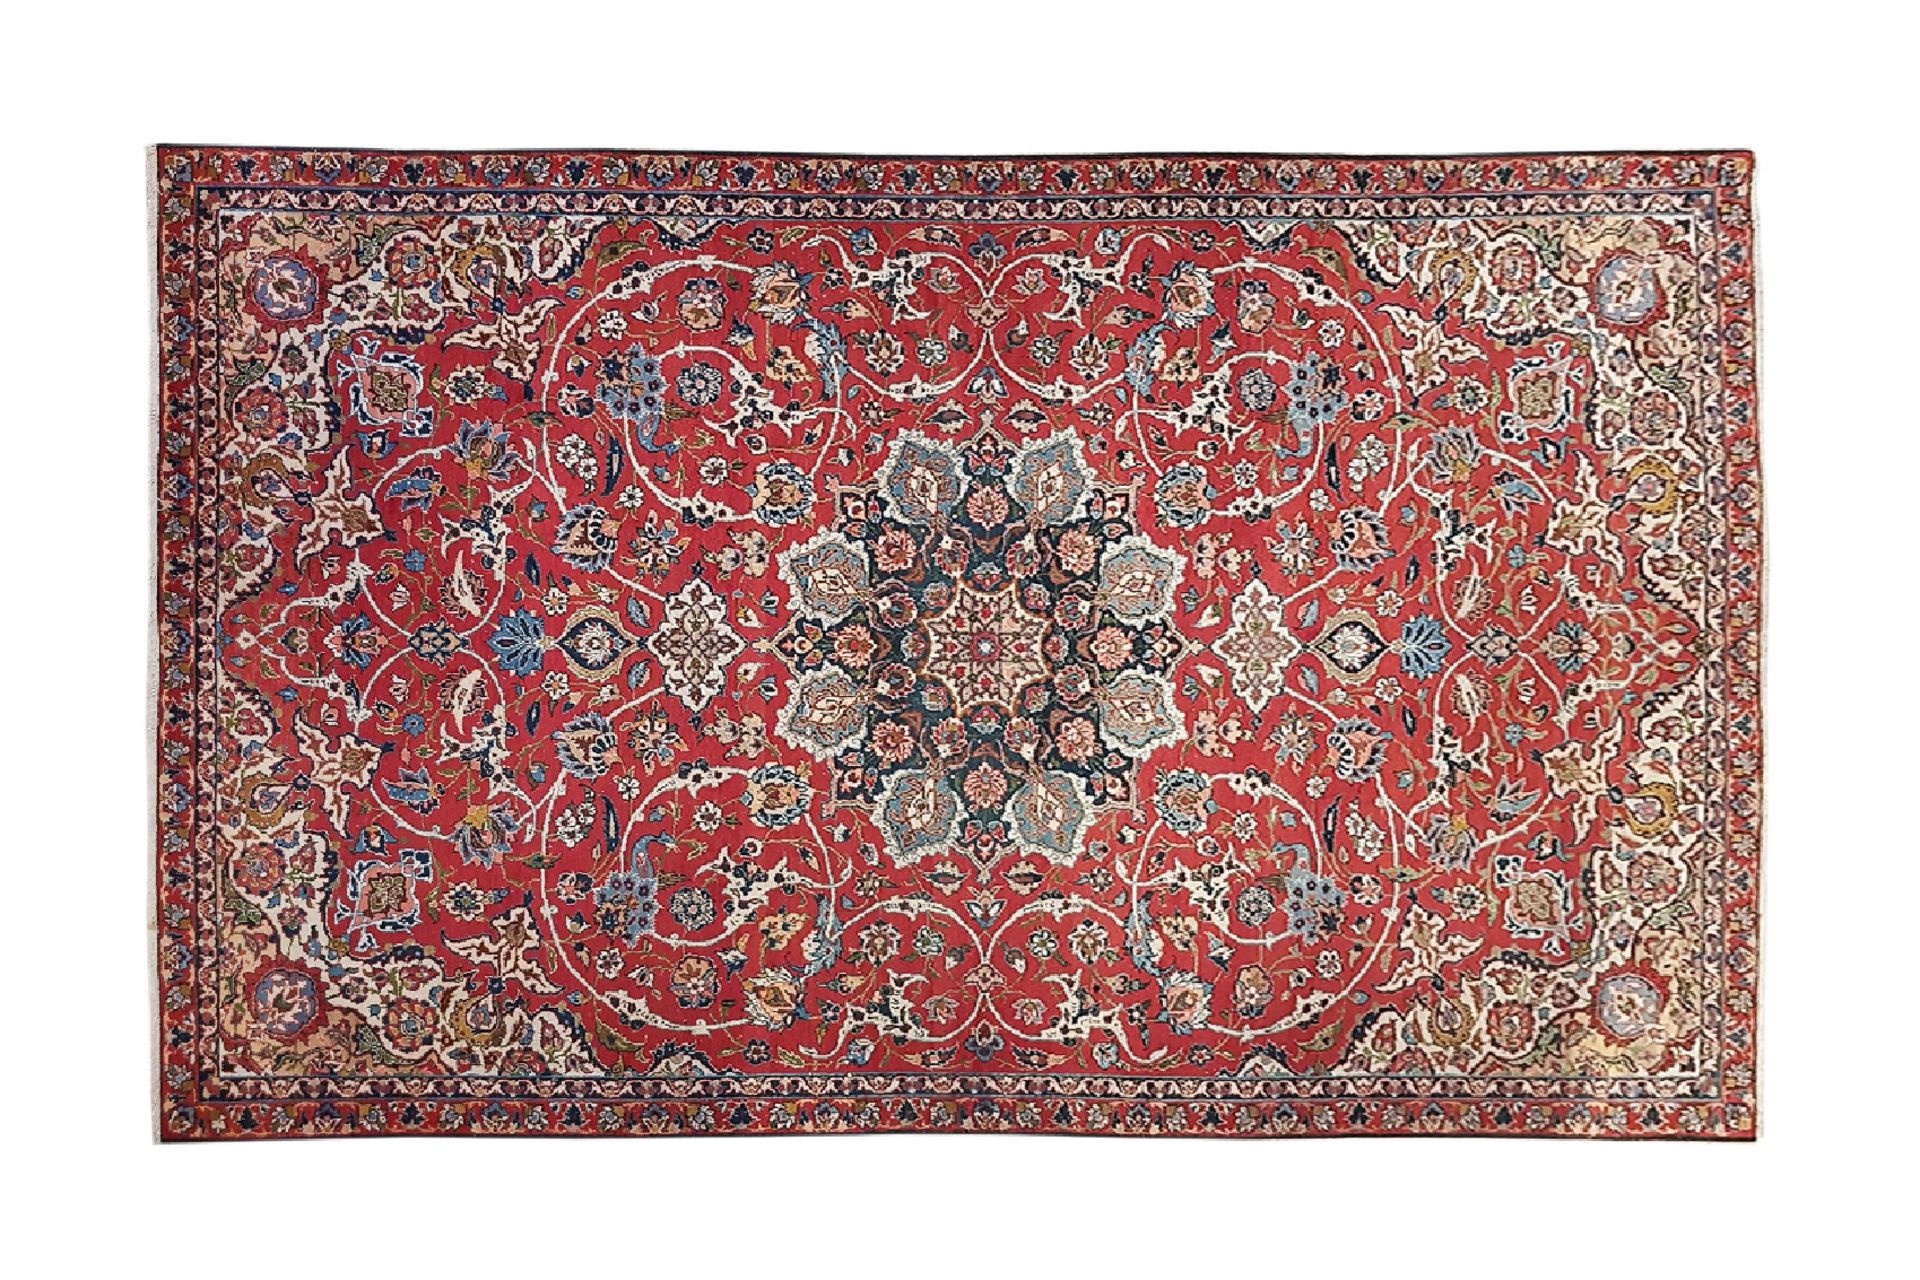 Isfahan Woll-Teppich, 1920-1930 | Isfahan wool carpet, 1920-1930 - Bild 2 aus 2